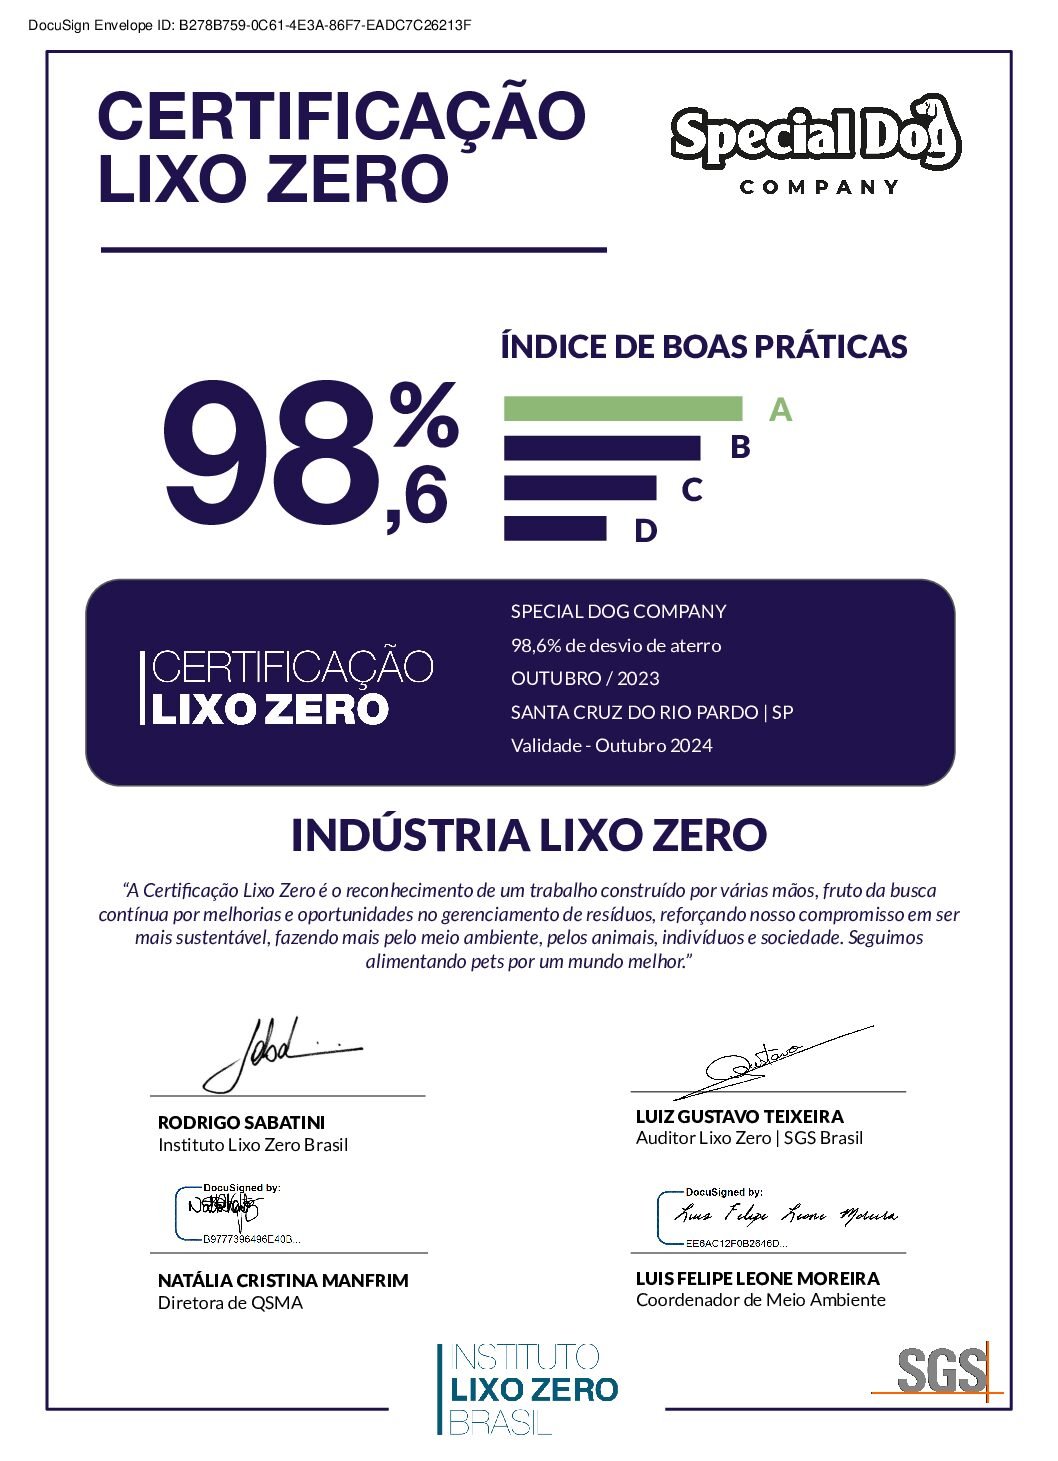 SGS_CertificaçãoLixoZero_Special_Dog_Company_SP_Outubro_2023 (1)